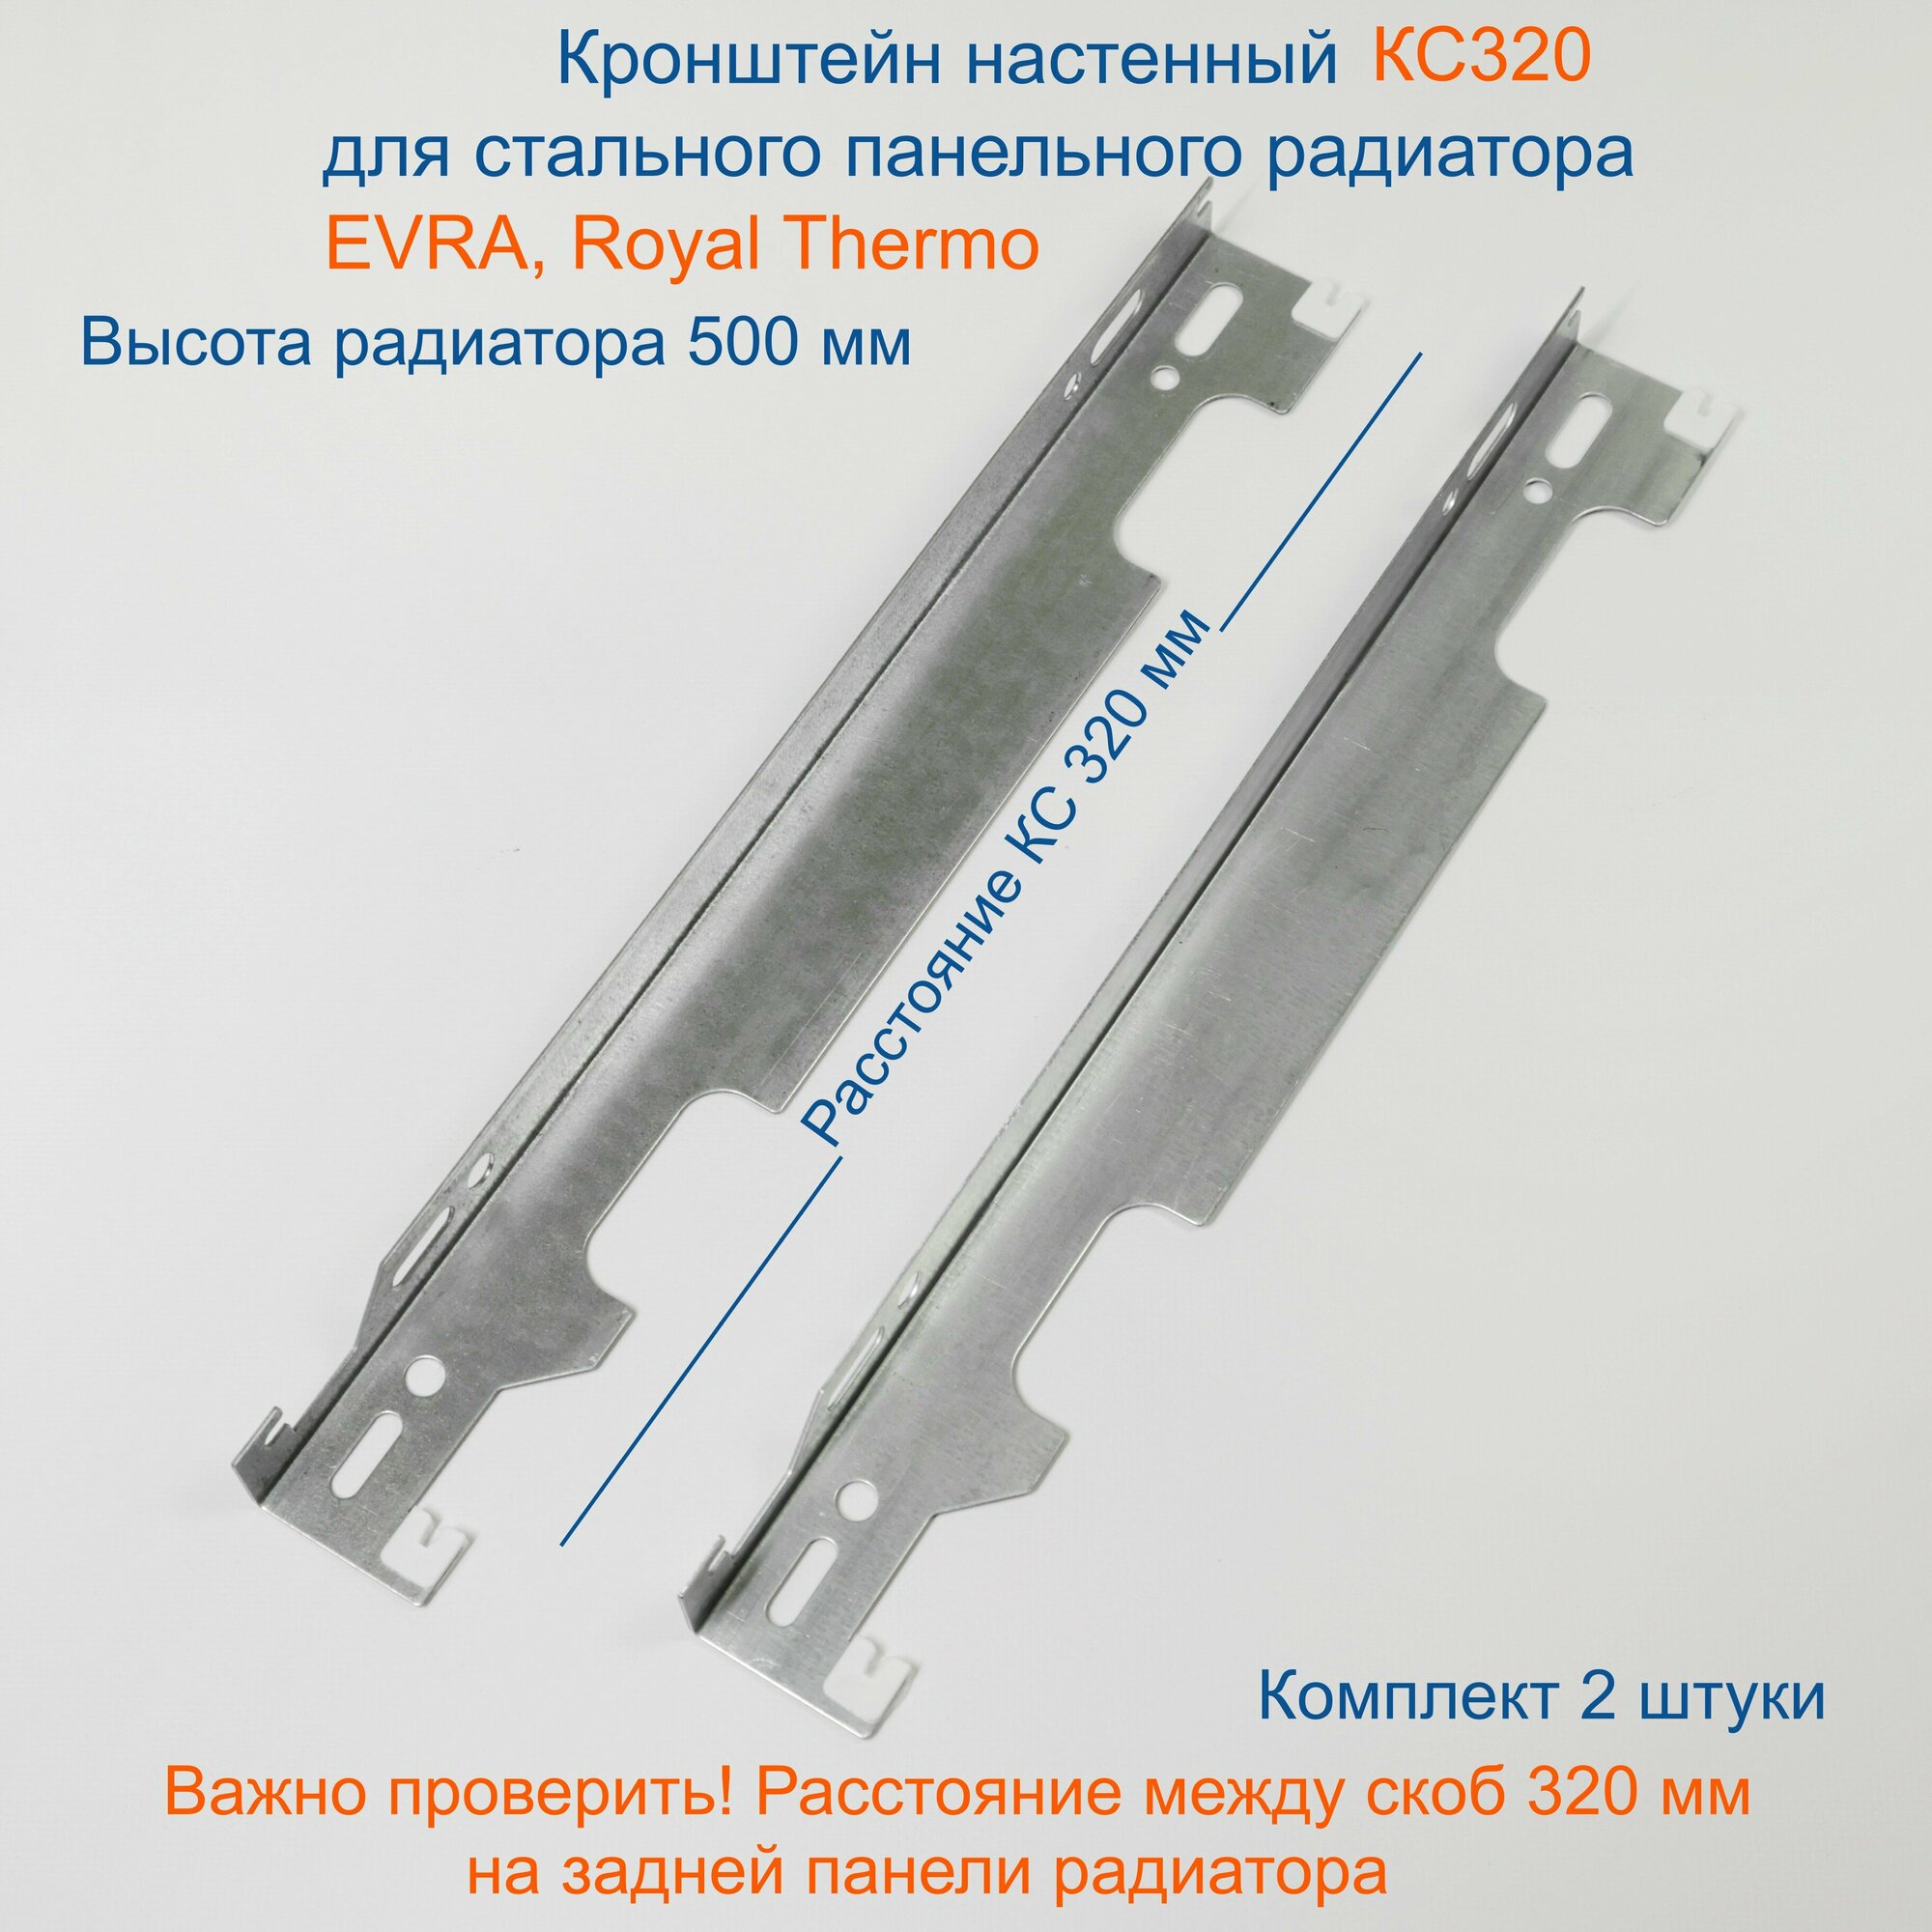 Кронштейн настенный Кайрос для стальных панельных радиаторов Purmo, EVRA, RoyalThermo 500 мм